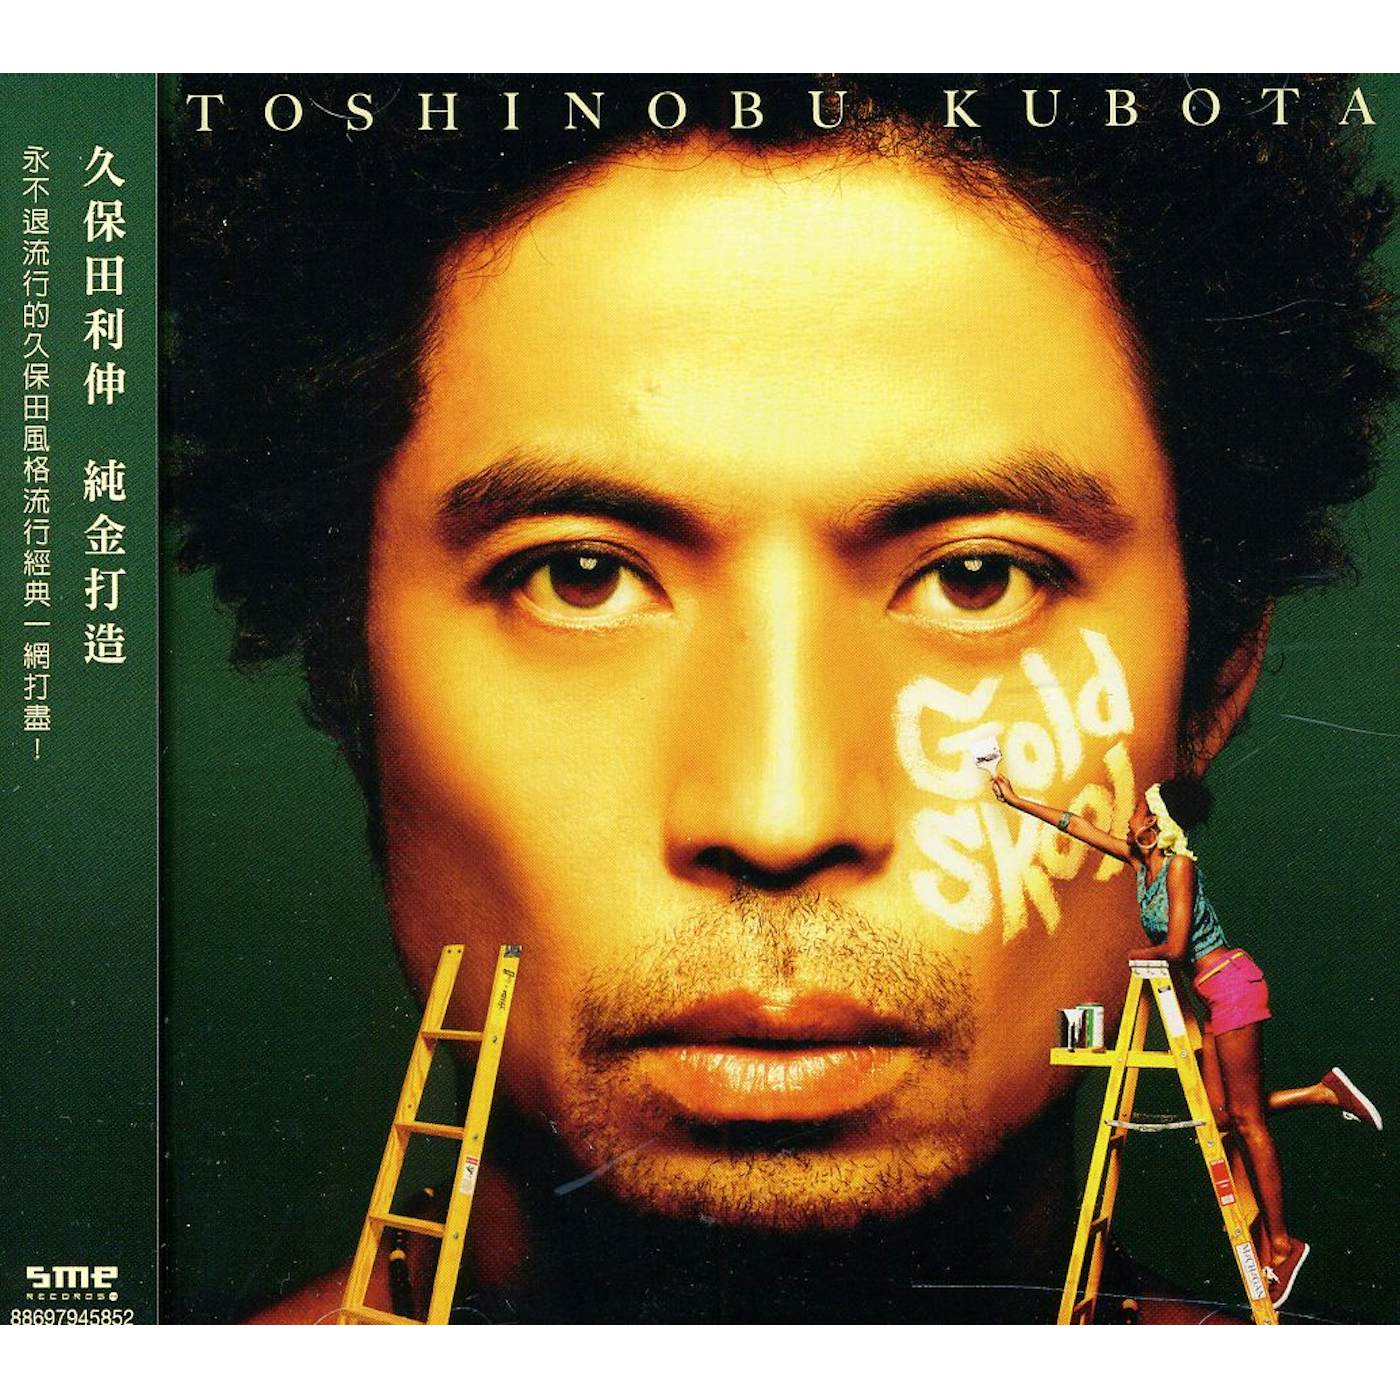 Toshinobu Kubota GOLD SKOOL CD